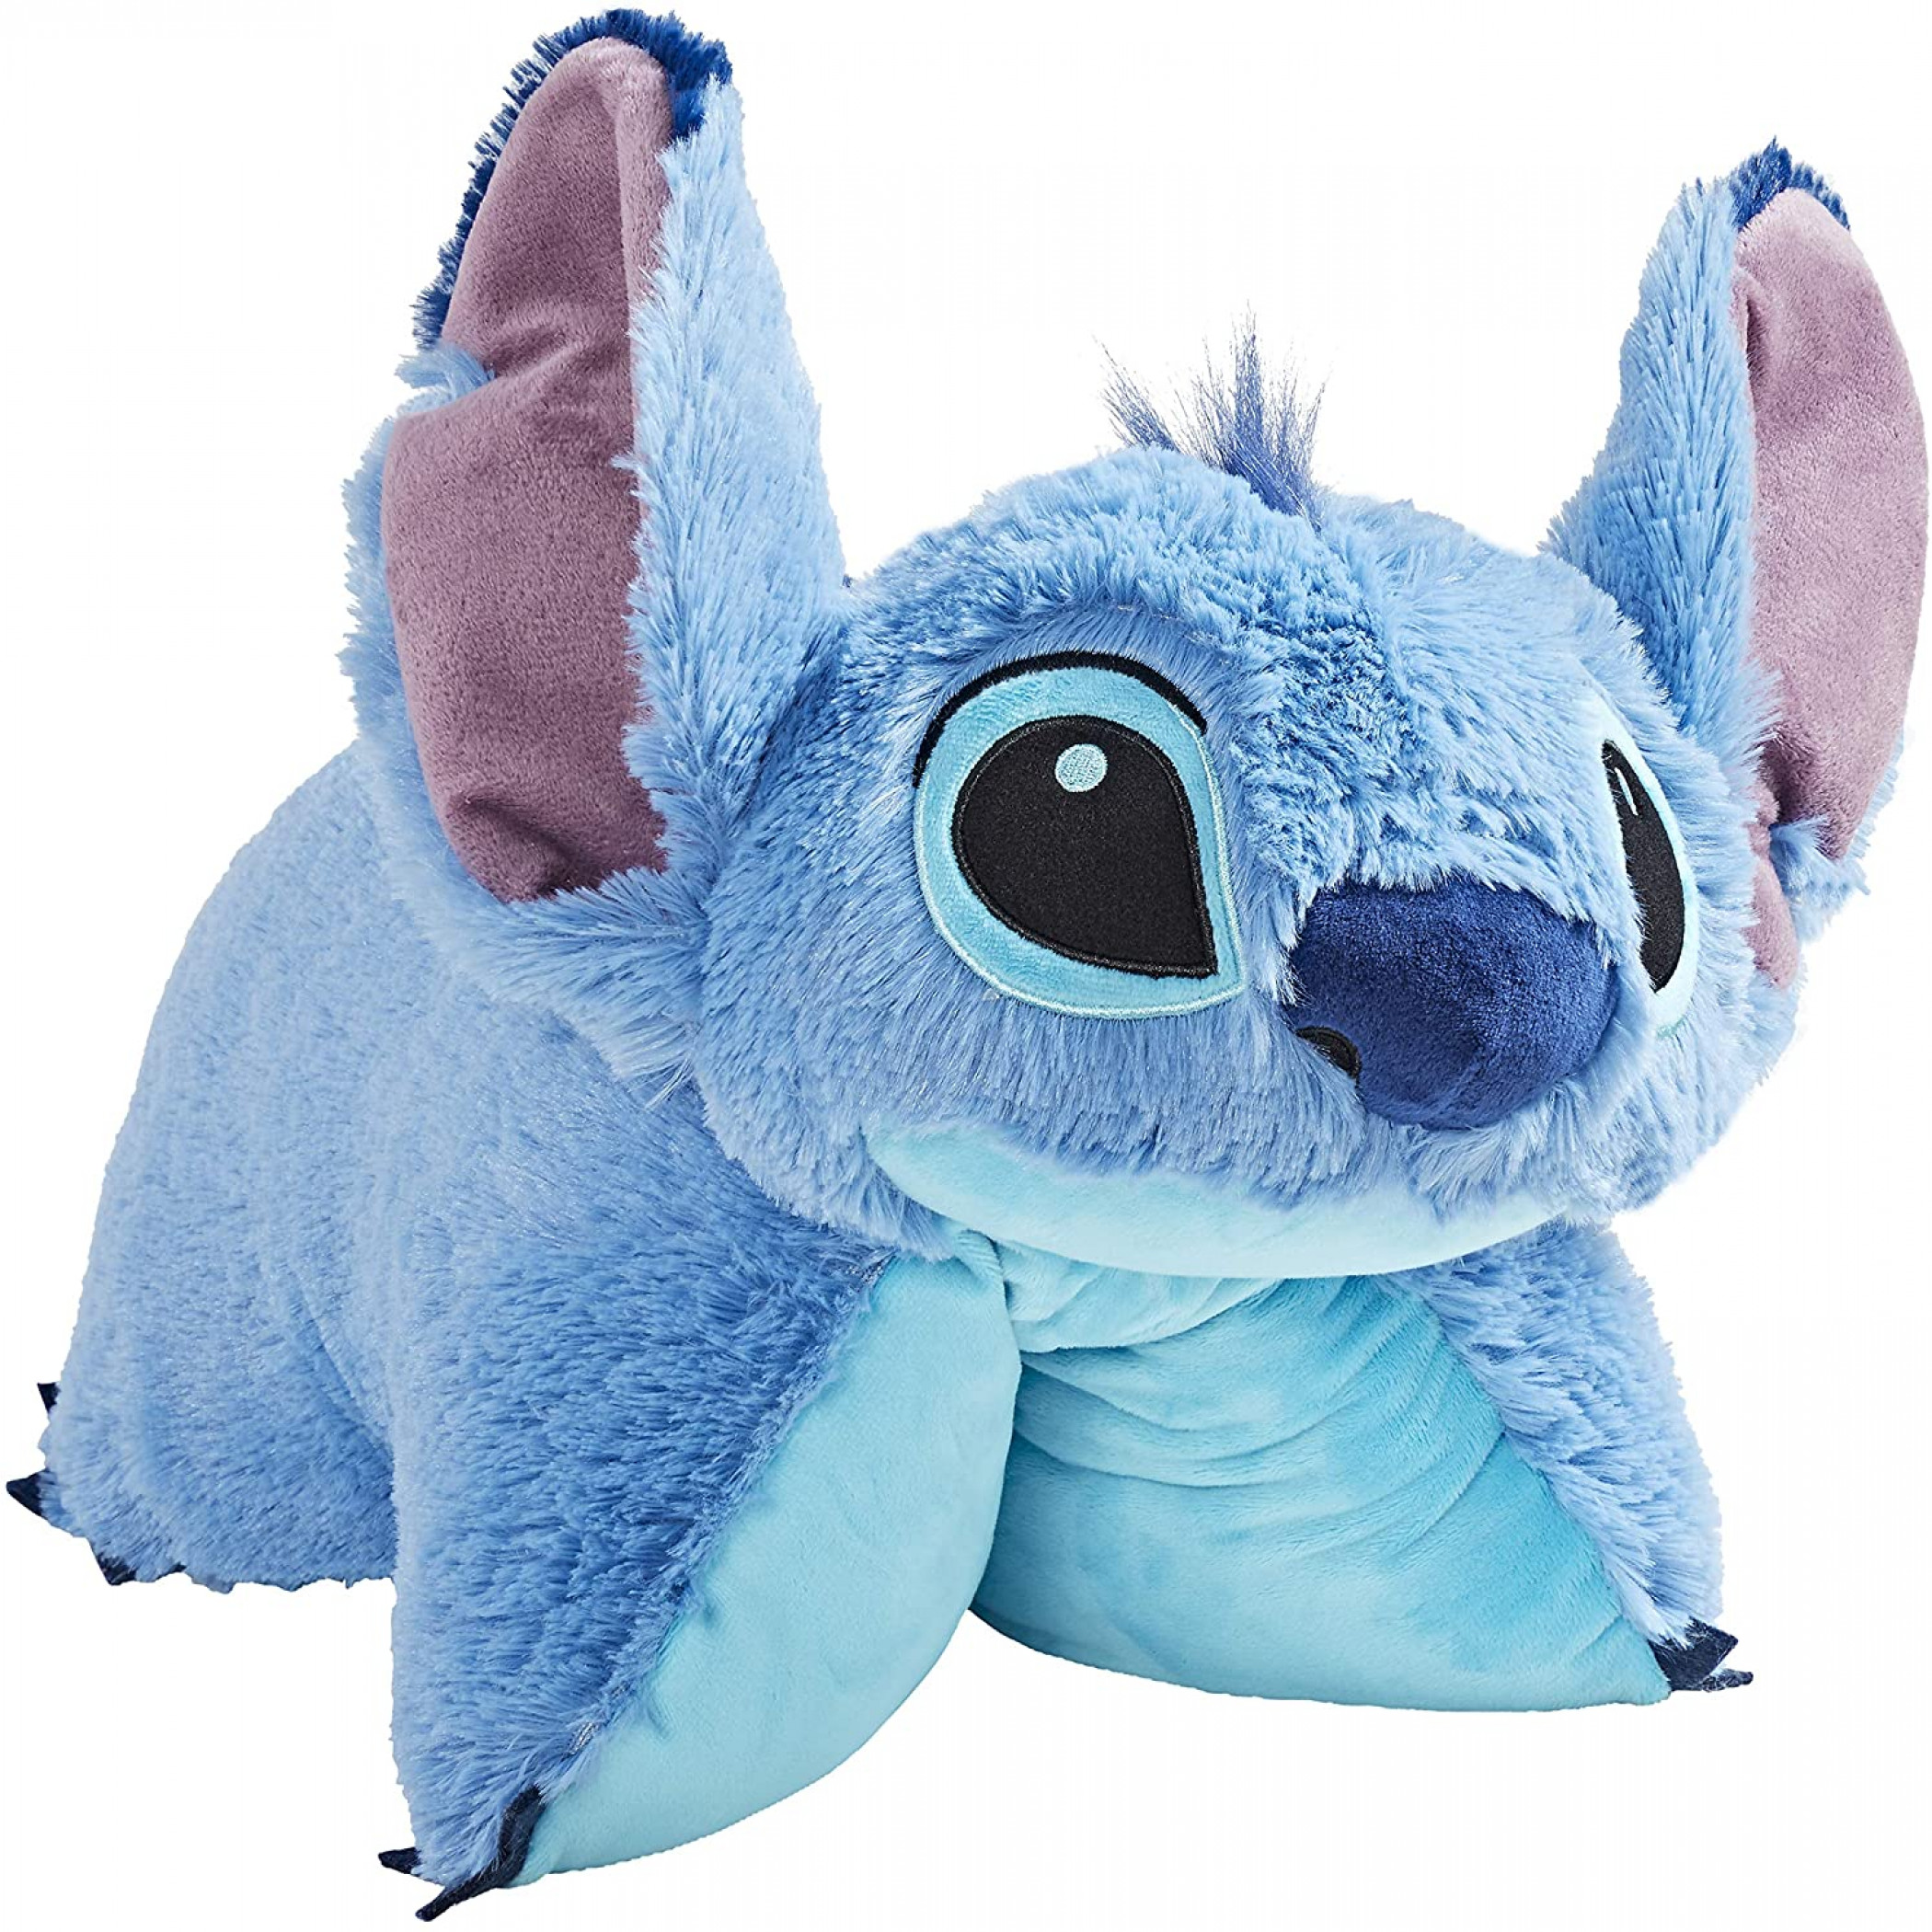 Stitch Pillow Pet - Disney Lilo & Stitch Stuffed Animal Plush Toy